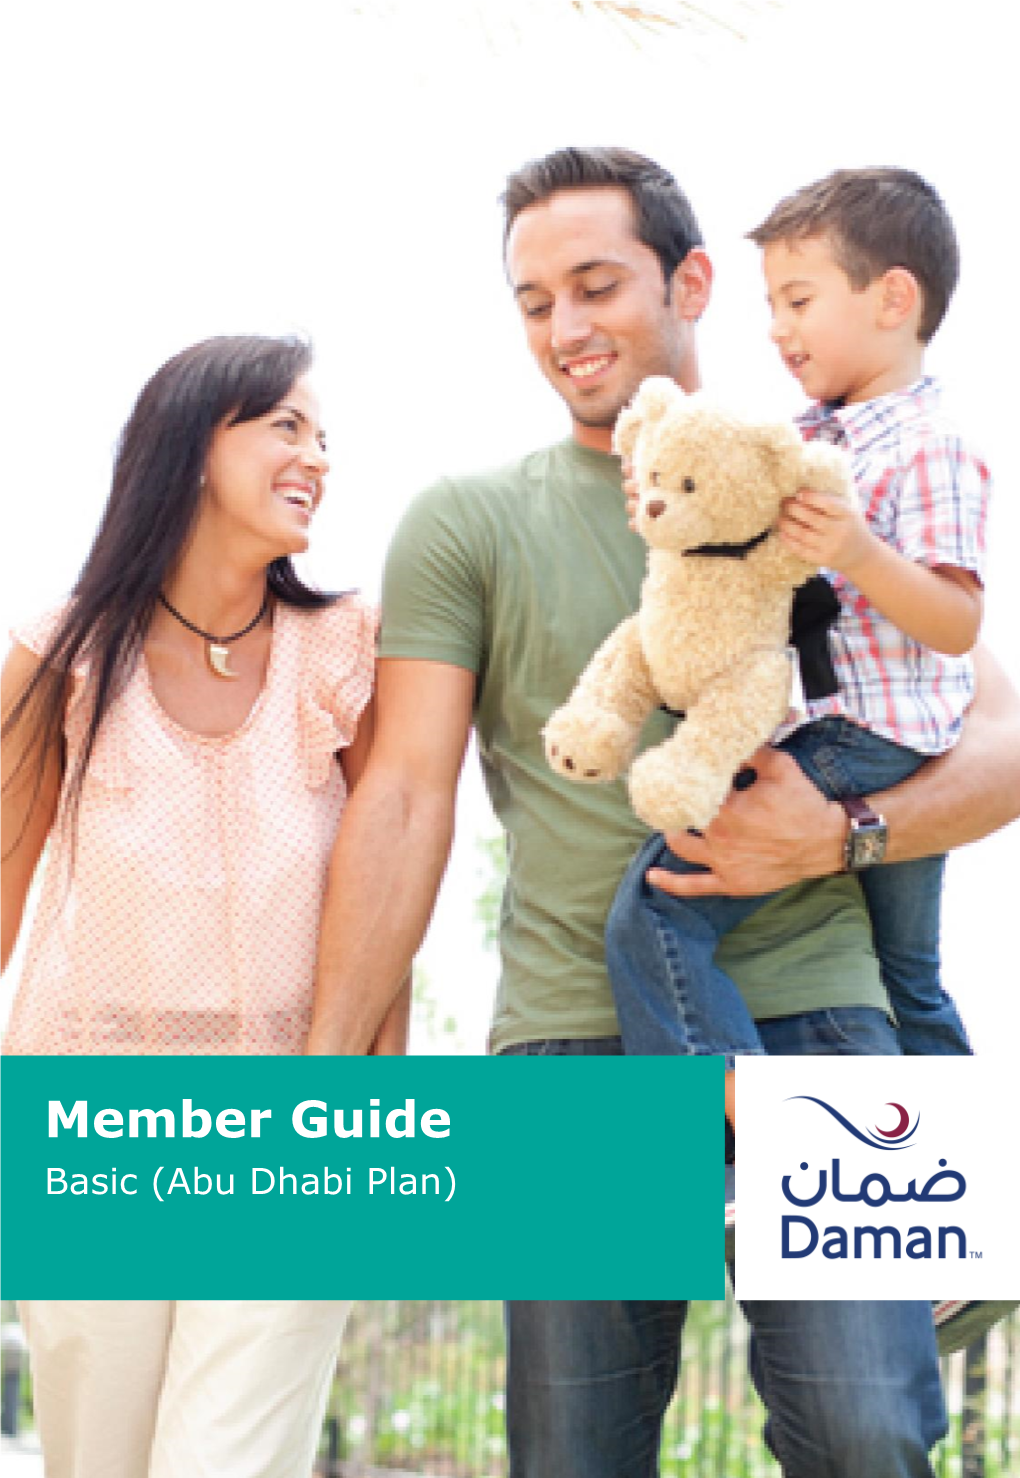 Member Guide Basic (Abu Dhabi Plan)